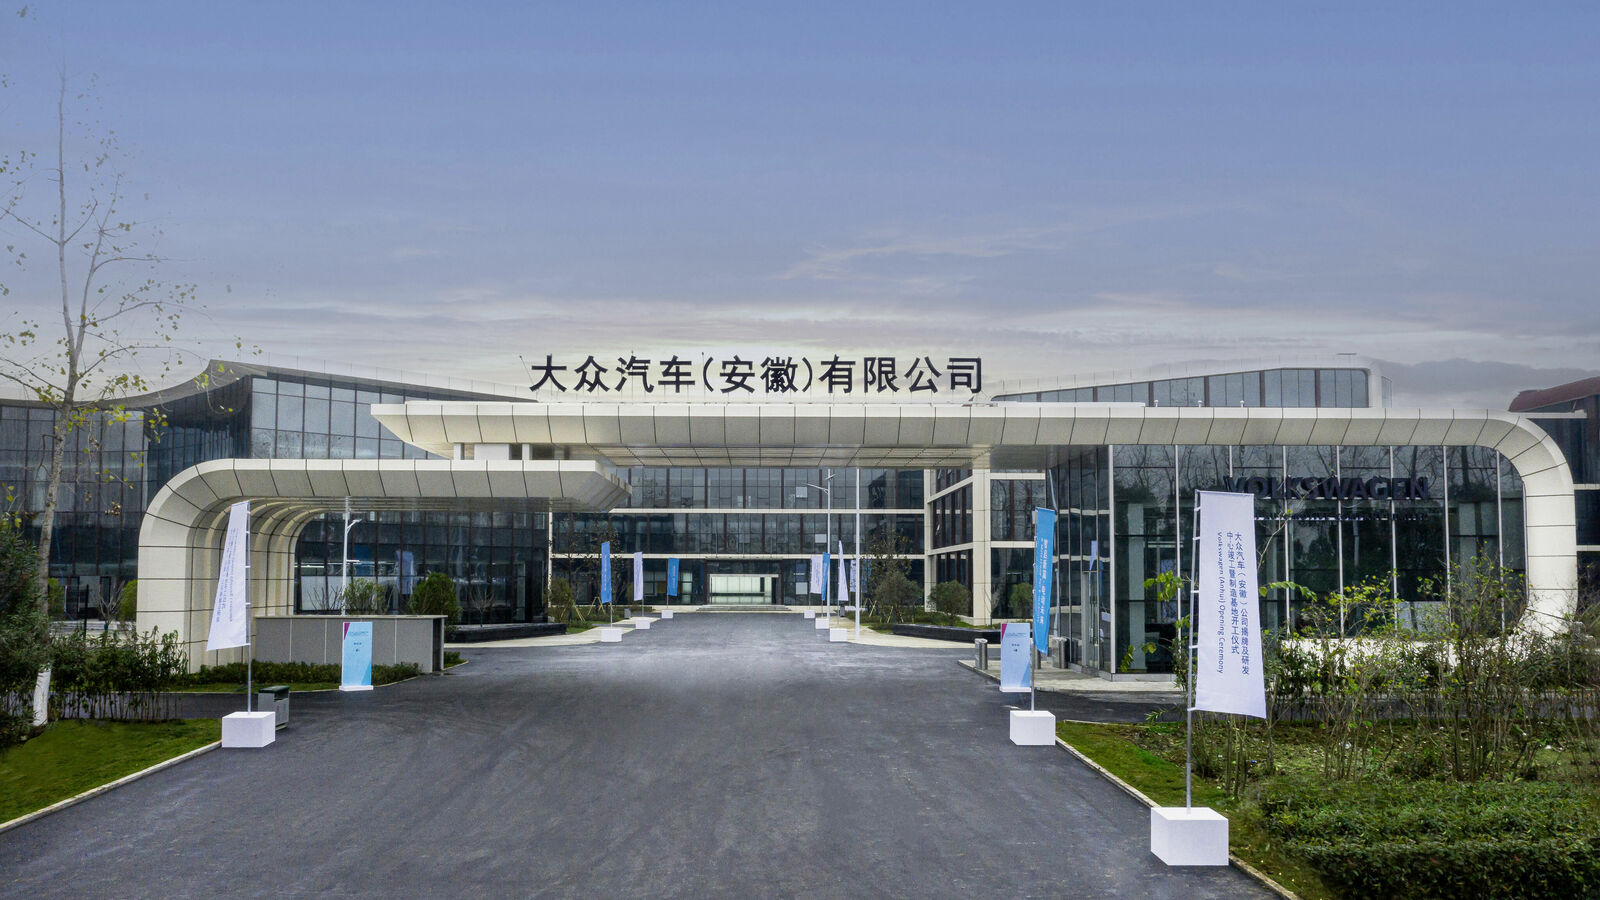 Neues Forschungs- und Entwicklungszentrum in der Provinz Anhui